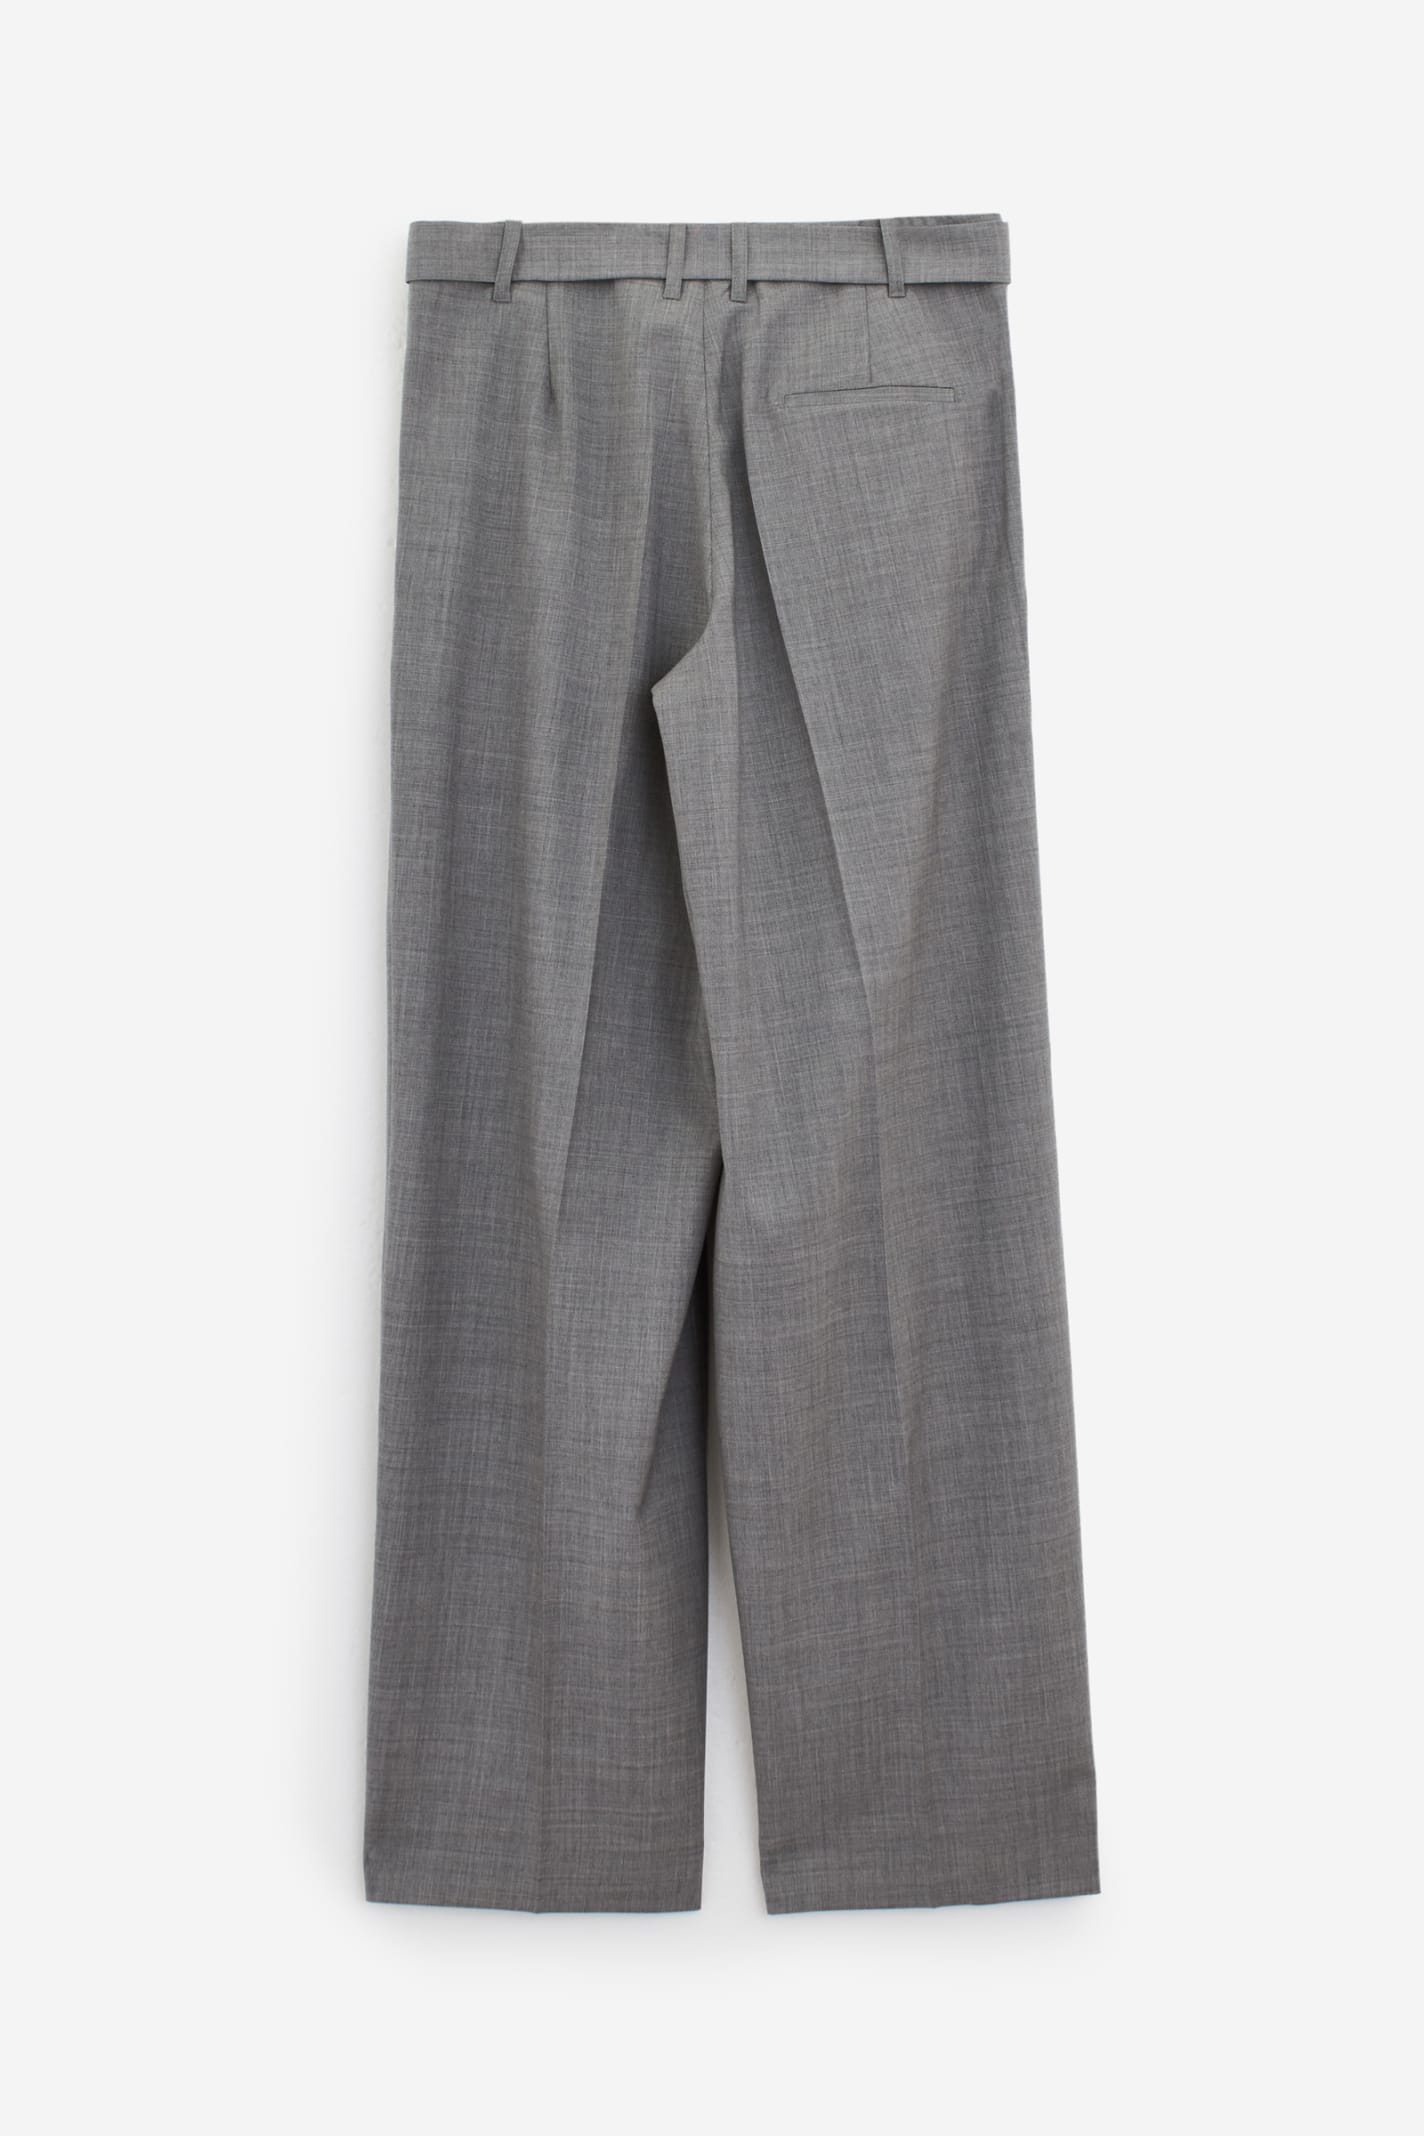 Shop Etudes Studio Cooper Pants In Grey